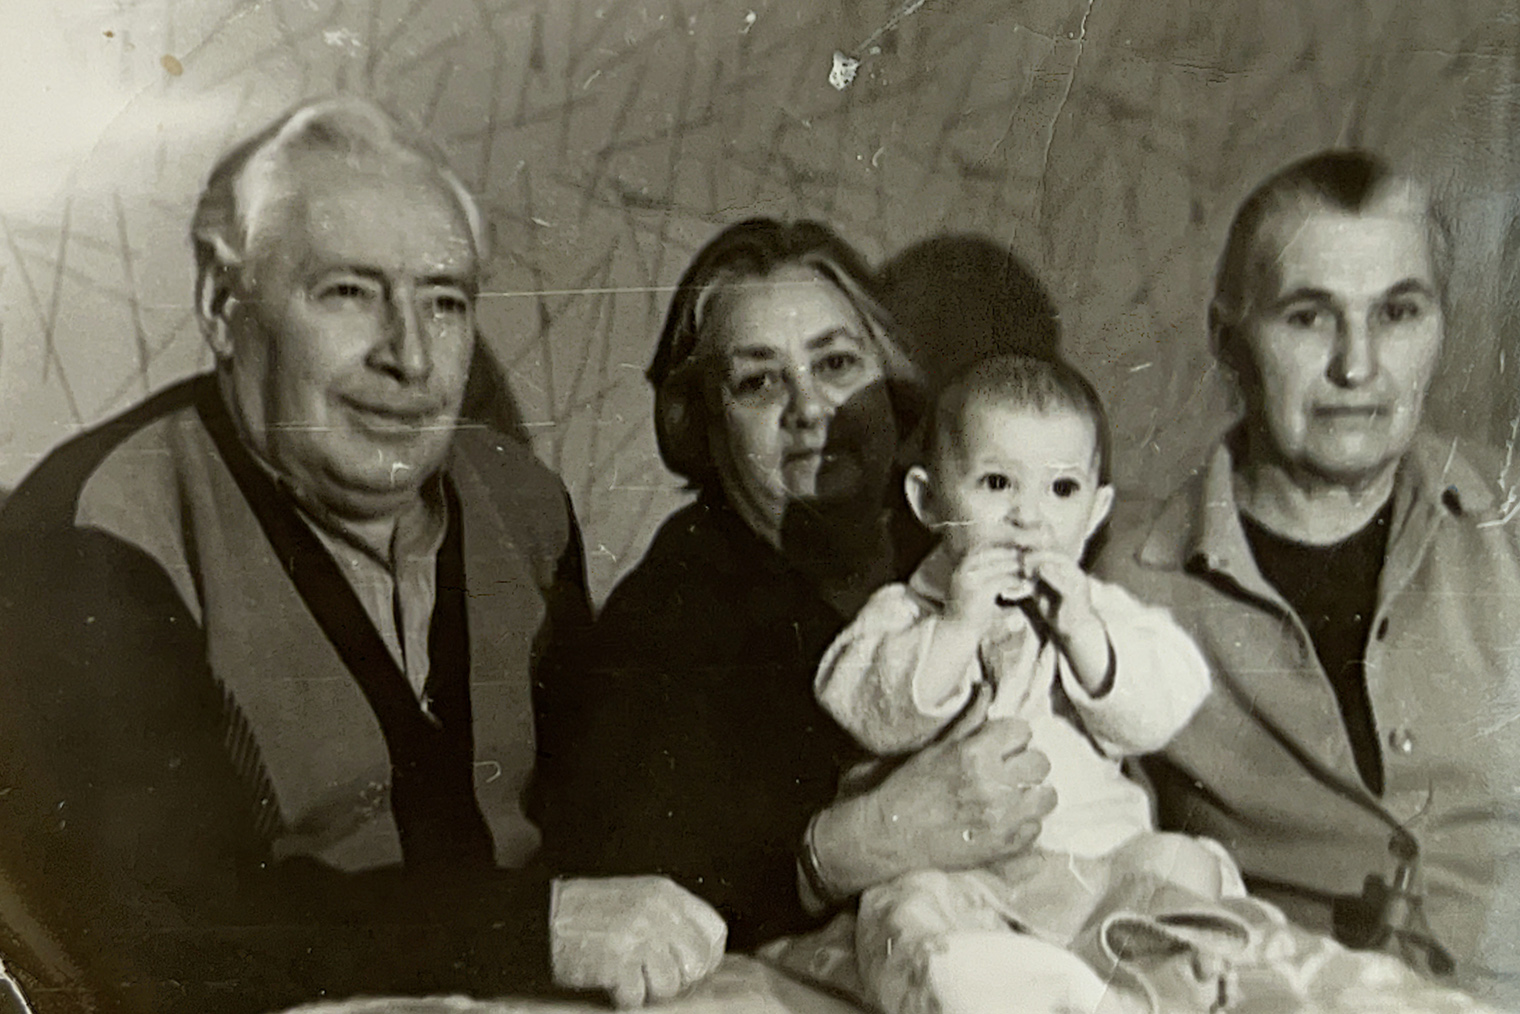 Мое доказательство родства: прабабушка Ева держит на руках мою маму Яну. Слева — Яков, а справа — Наталья Михайловна, моя прабабушка по другой линии